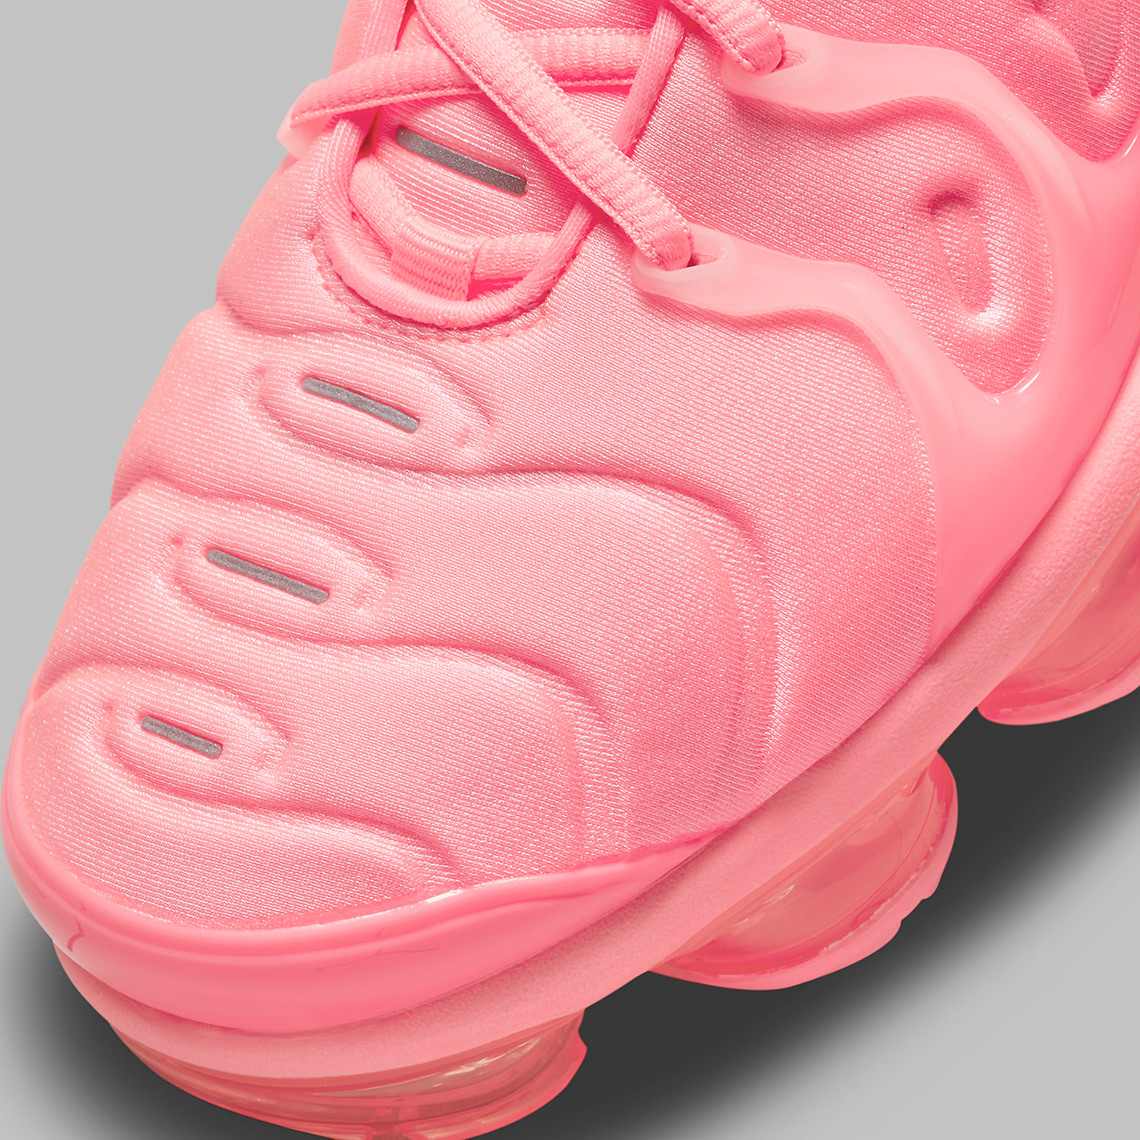 vapor max bubble gum pink